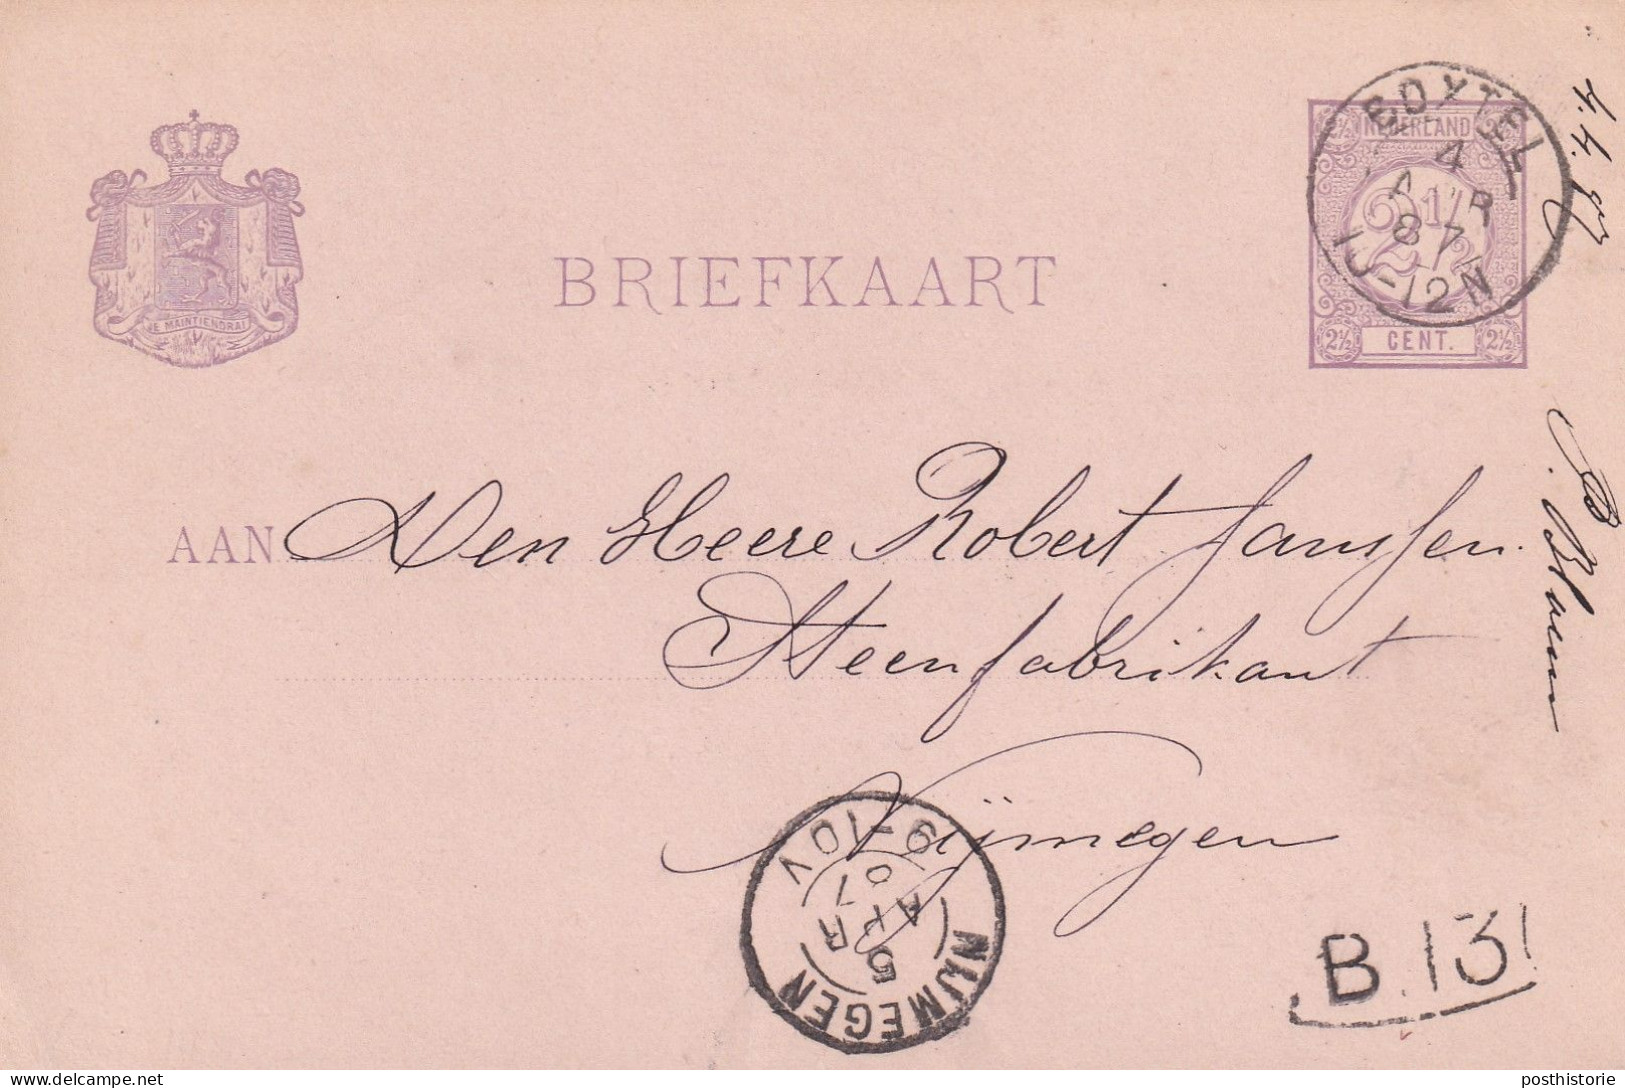 Briefkaart 4 Apr 1887 Boxtel (postkantoor Kleinrond) Naar Nijmegen (kleinrond) - Marcophilie